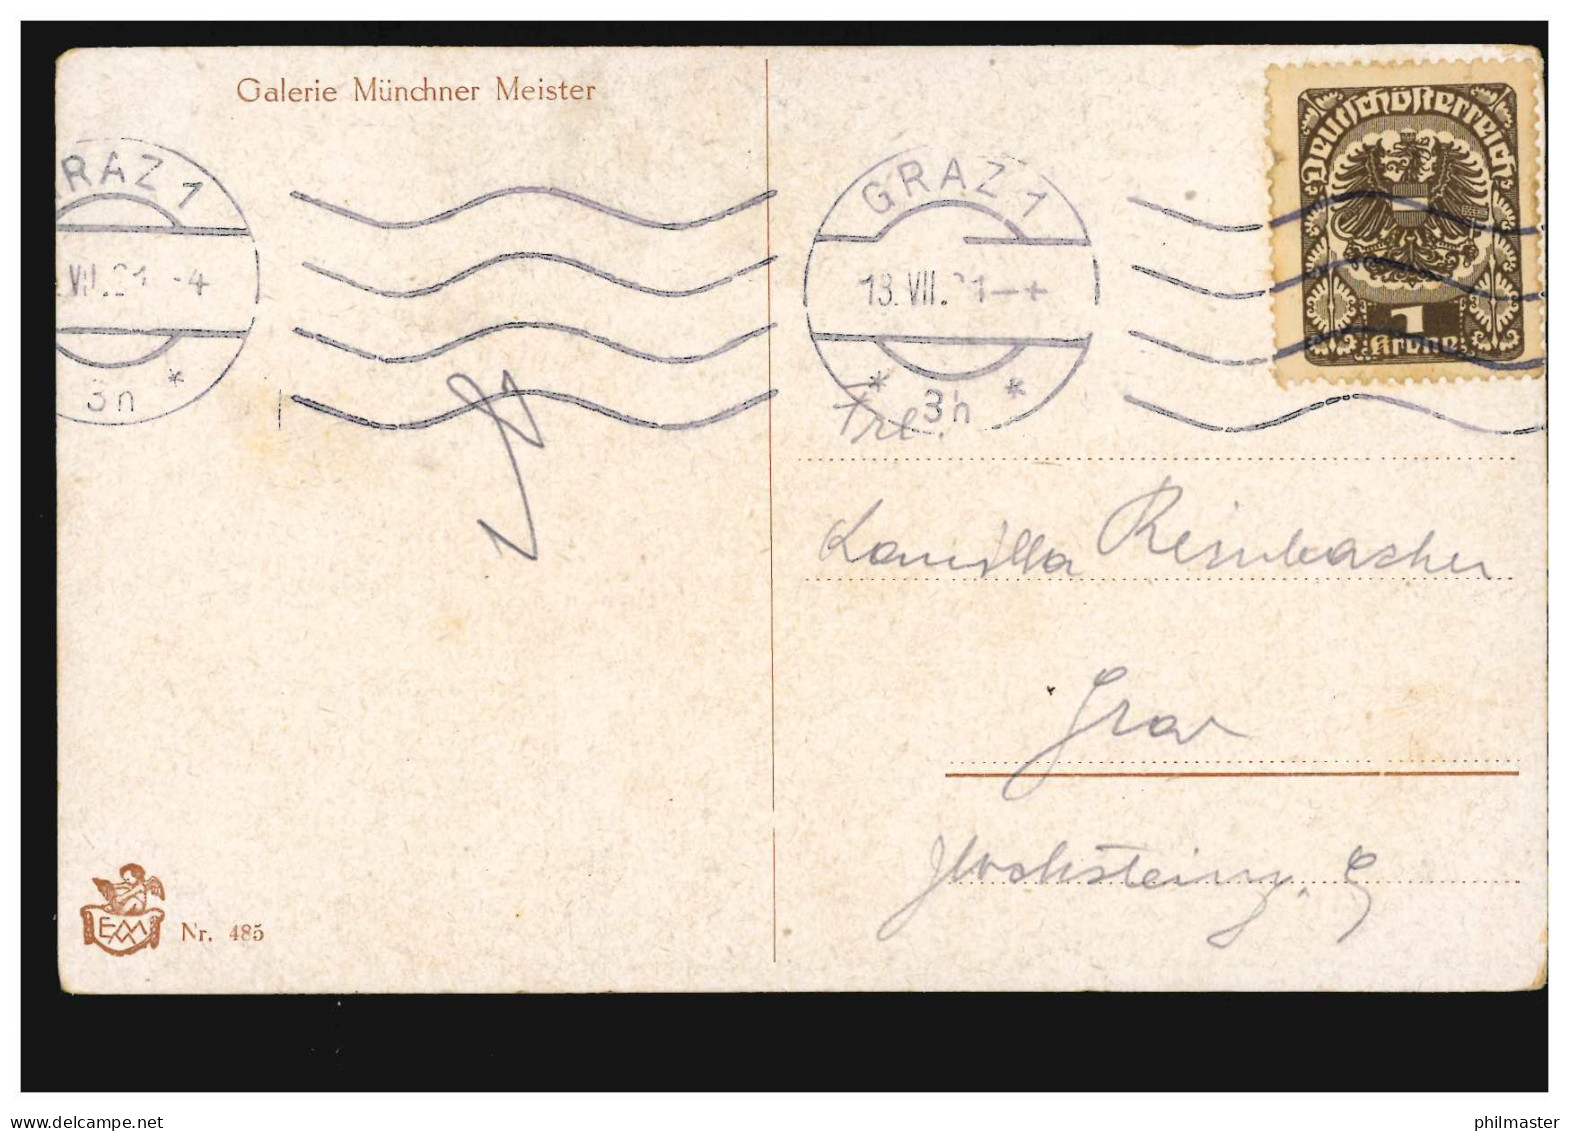 Künstler-AK Jodolfi: Der Erste Brief, Galerie Münchner Meister, GRAZ 13.7.1921 - Ohne Zuordnung